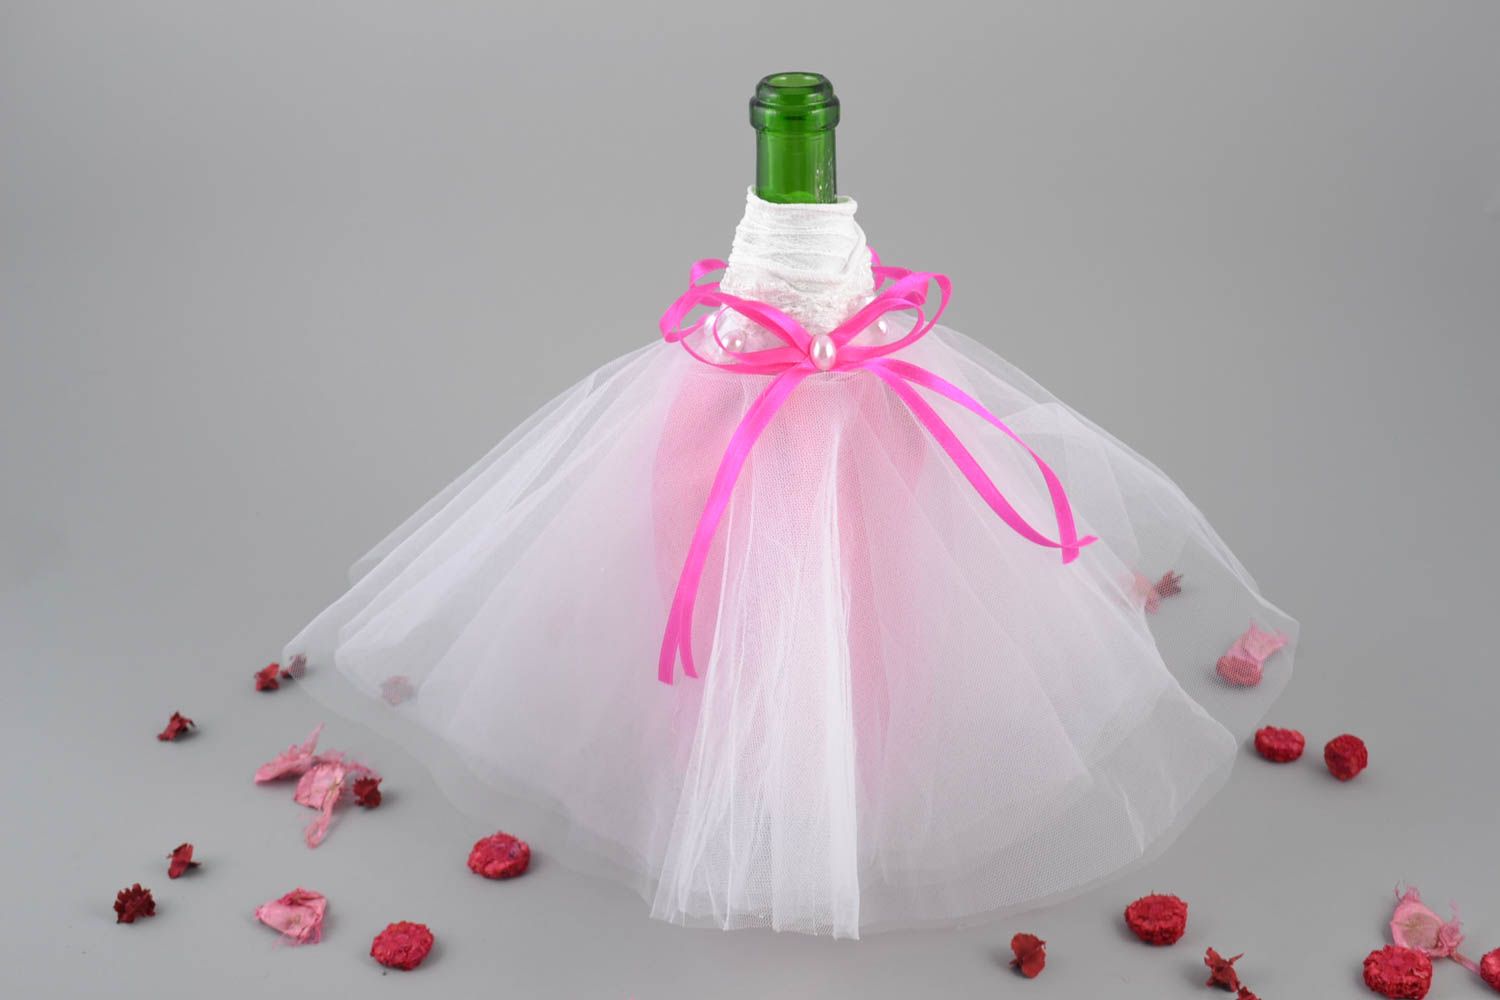 Одежда невесты на бутылку шампанского нежный свадебный аксессуар в светлых тонах фото 1